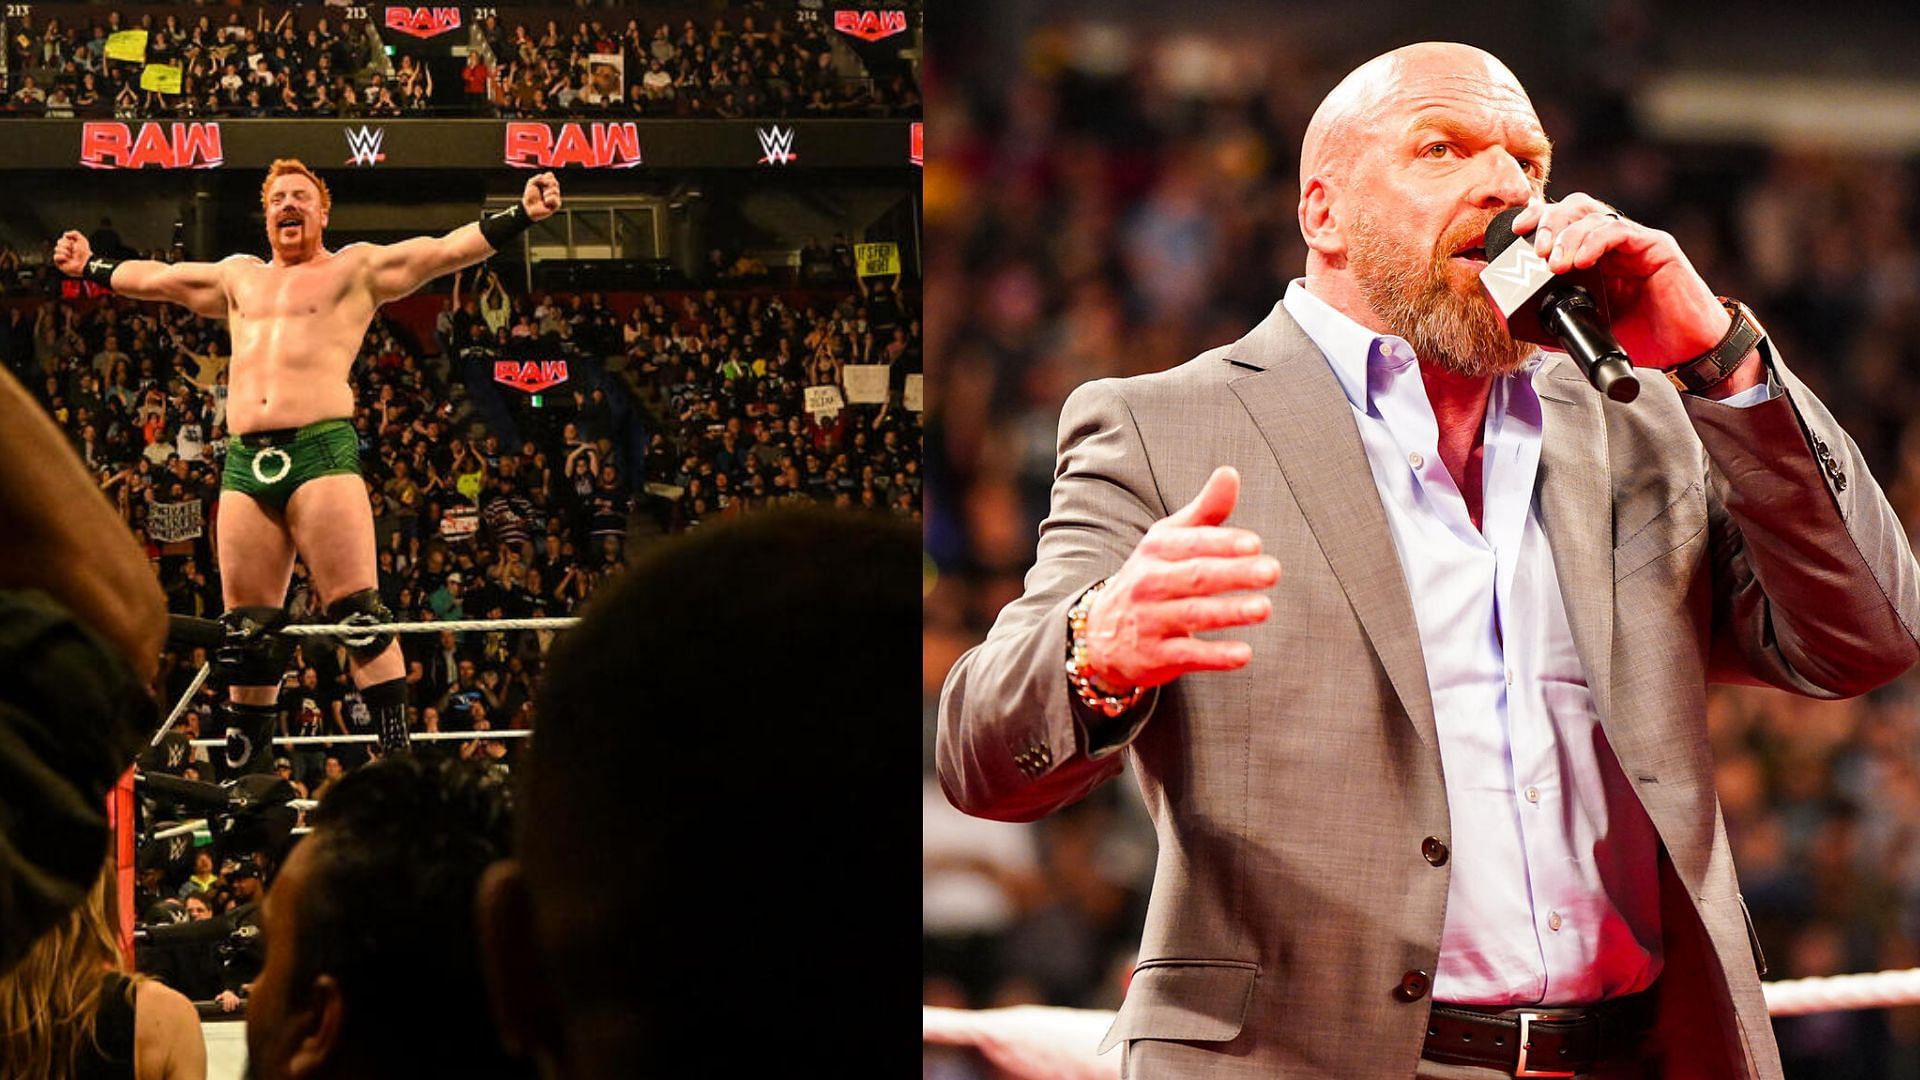 WWE Raw की रेटिंग्स में कंपनी को हुआ नुकसान या फायदा